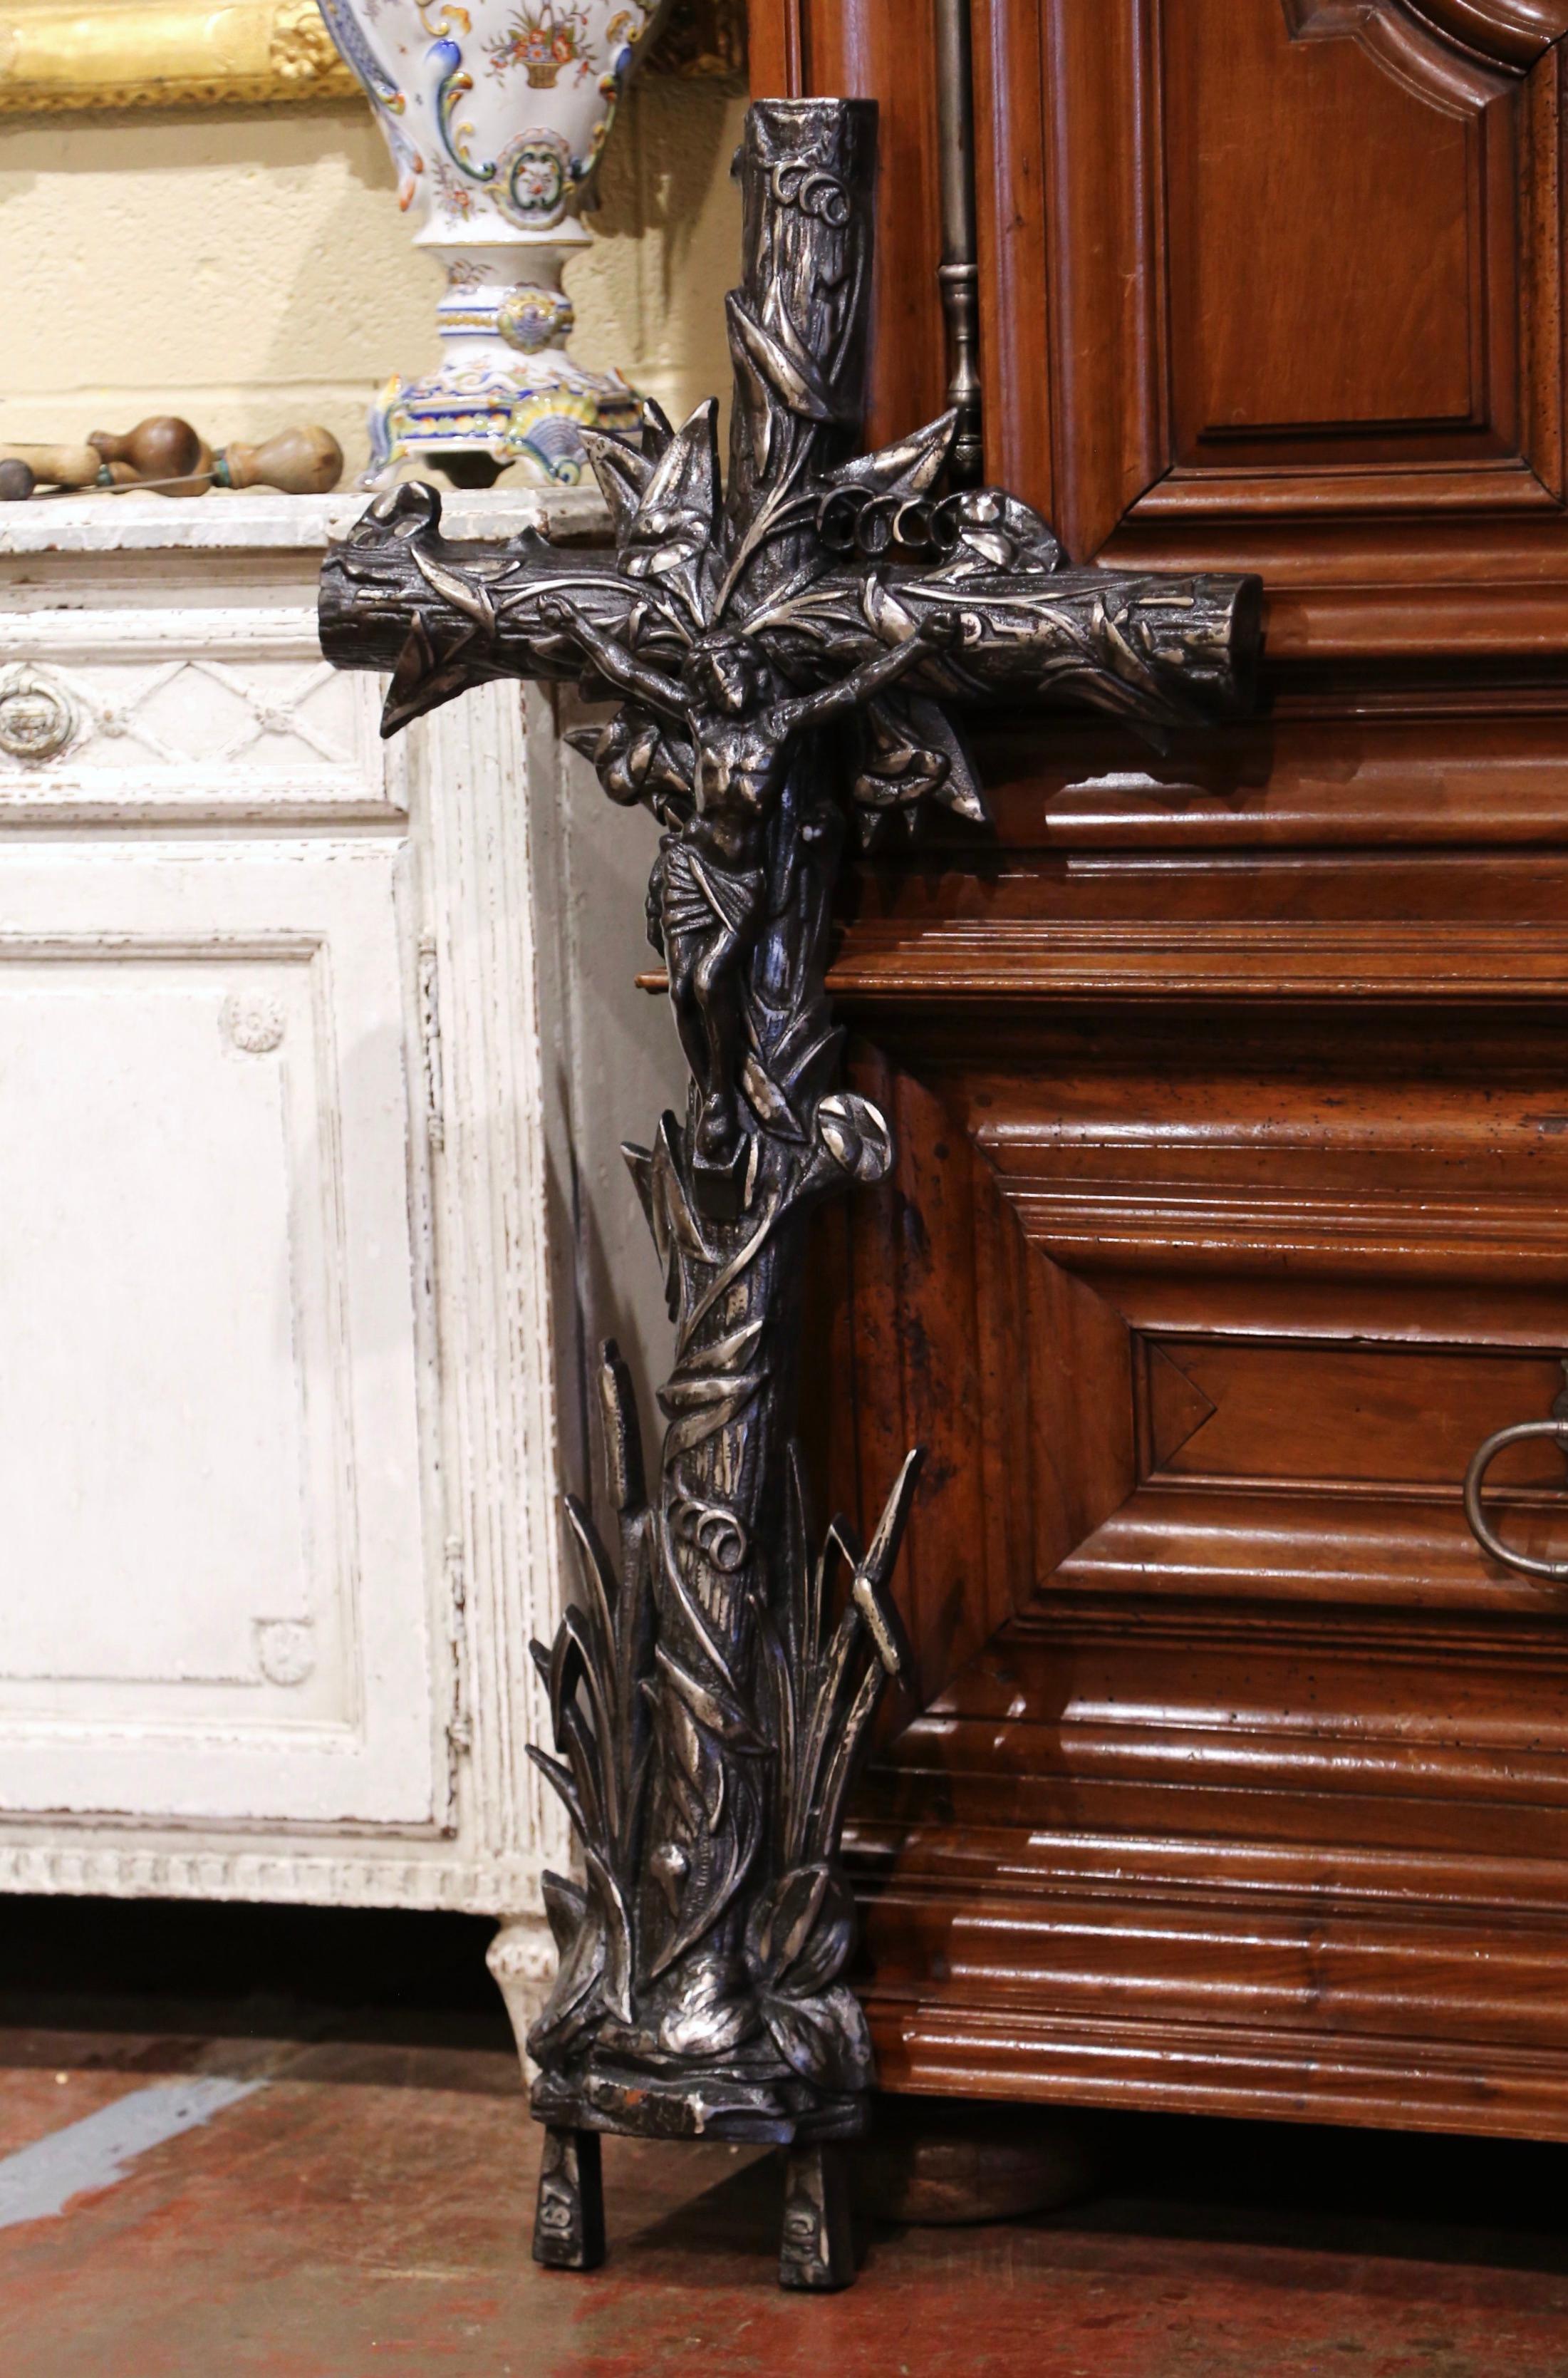 Dieses schöne, antike Kreuz wurde um 1870 in Frankreich hergestellt. Das große eiserne Kruzifix ruht auf einem ovalen Sockel und zeigt den an das Kreuz genagelten Herrn. Es ist durchgängig mit Weinreben- und Schilfmotiven in Hochrelief verziert. Die